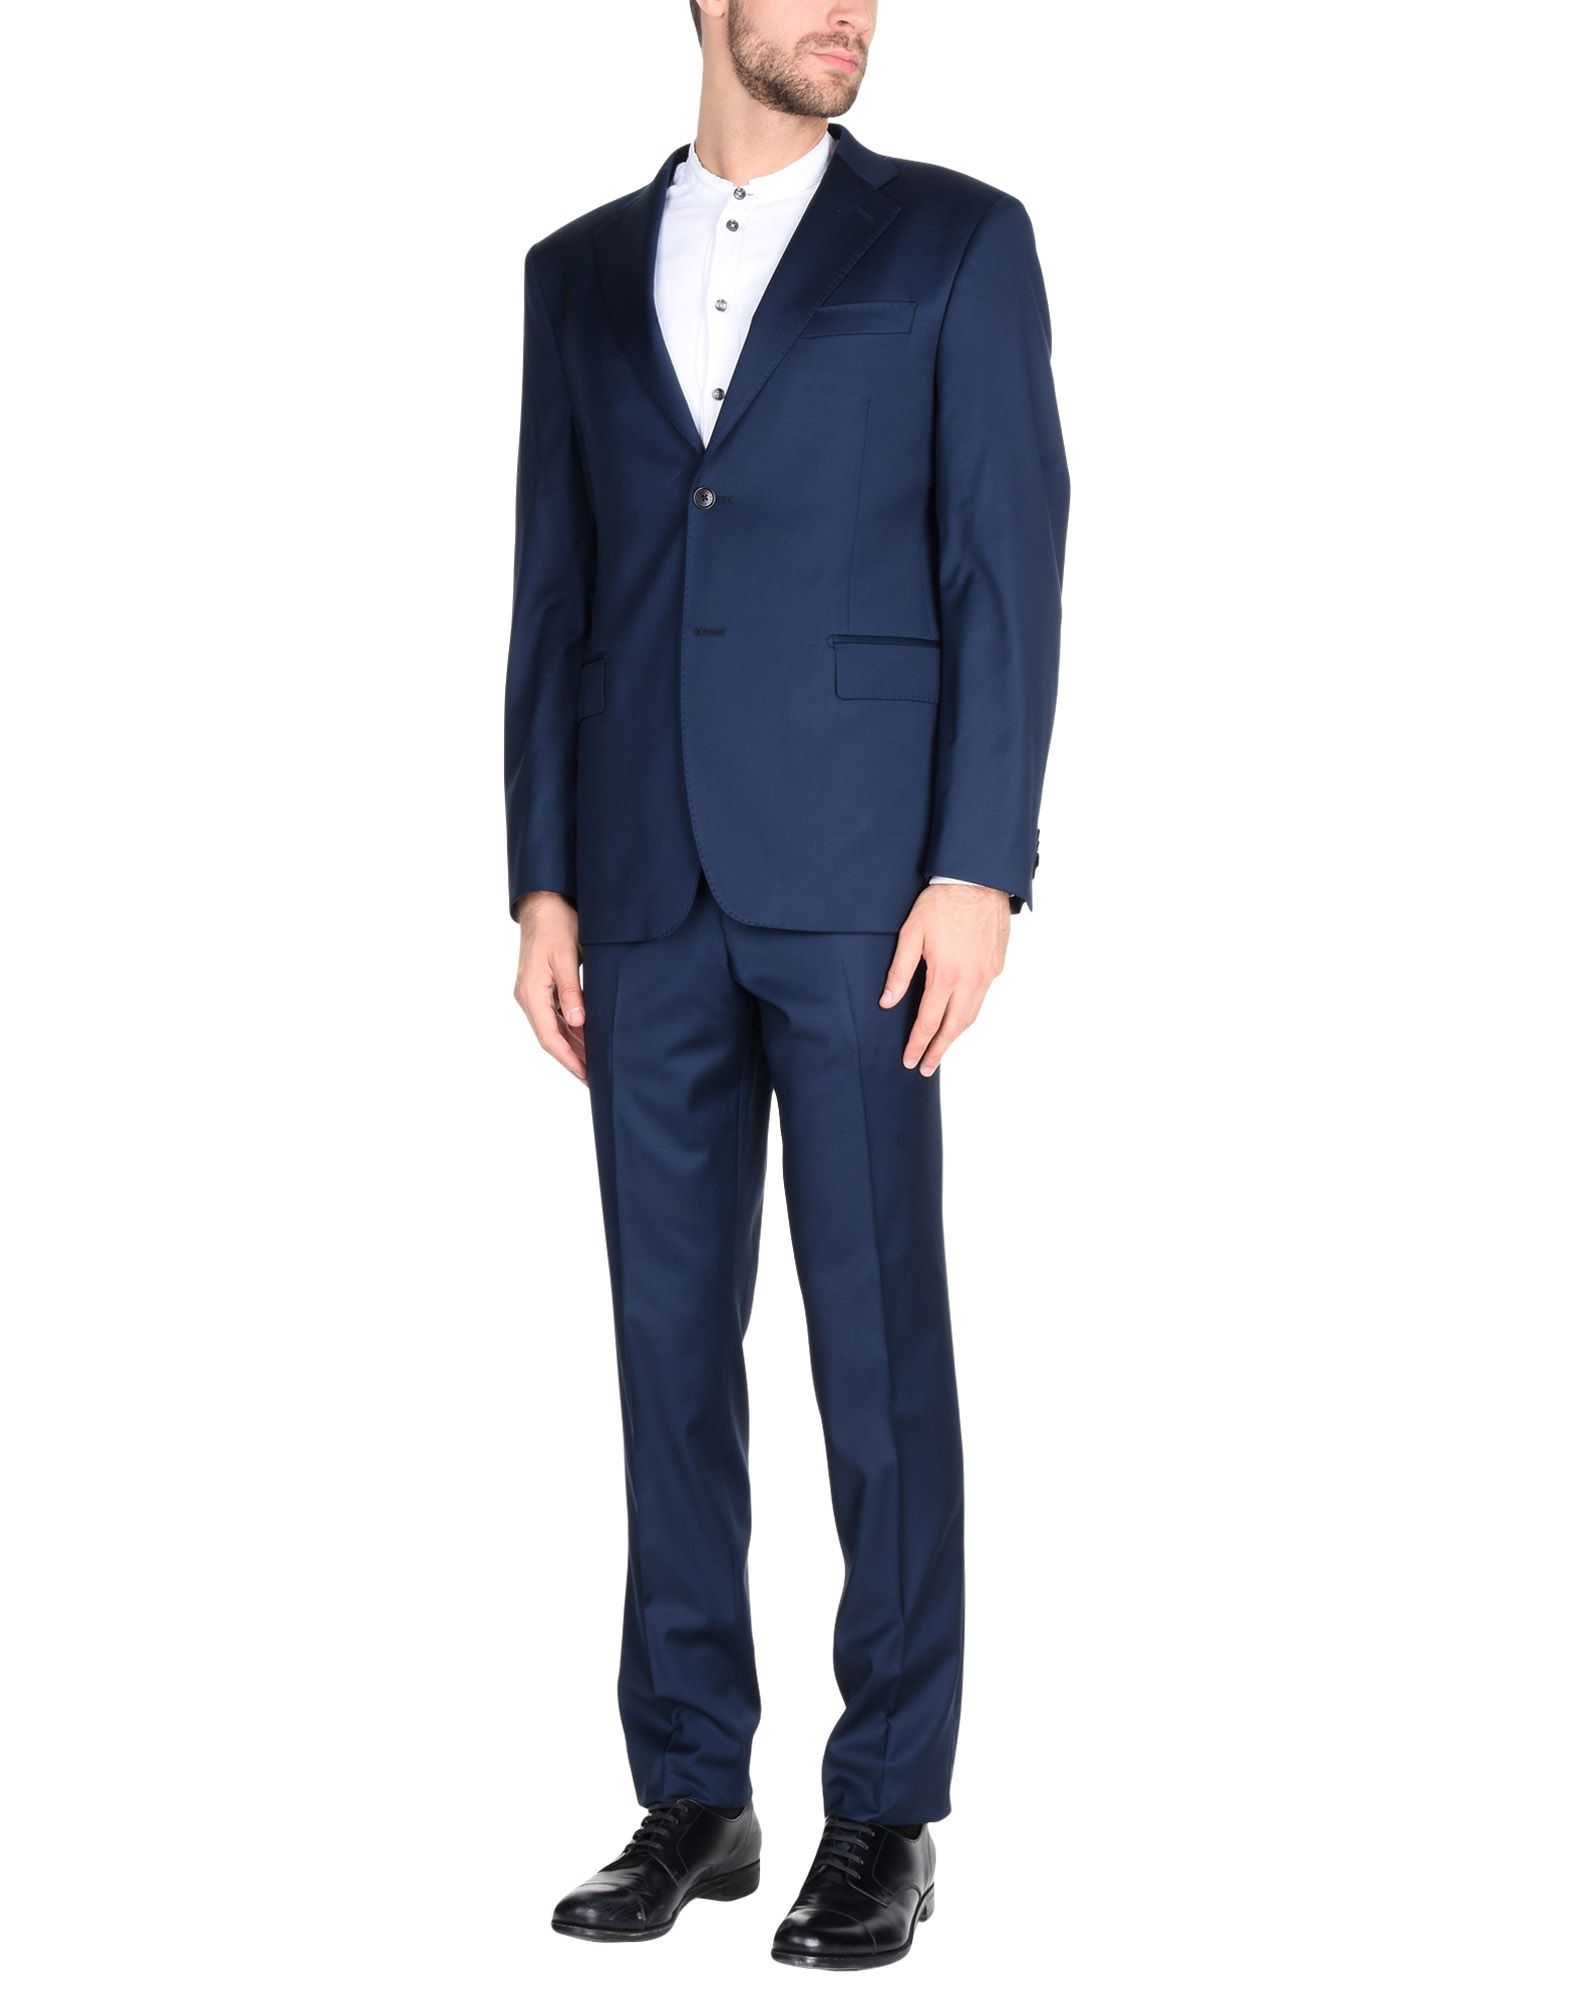 PIERRE BALMAIN Suits,49398504JX 4